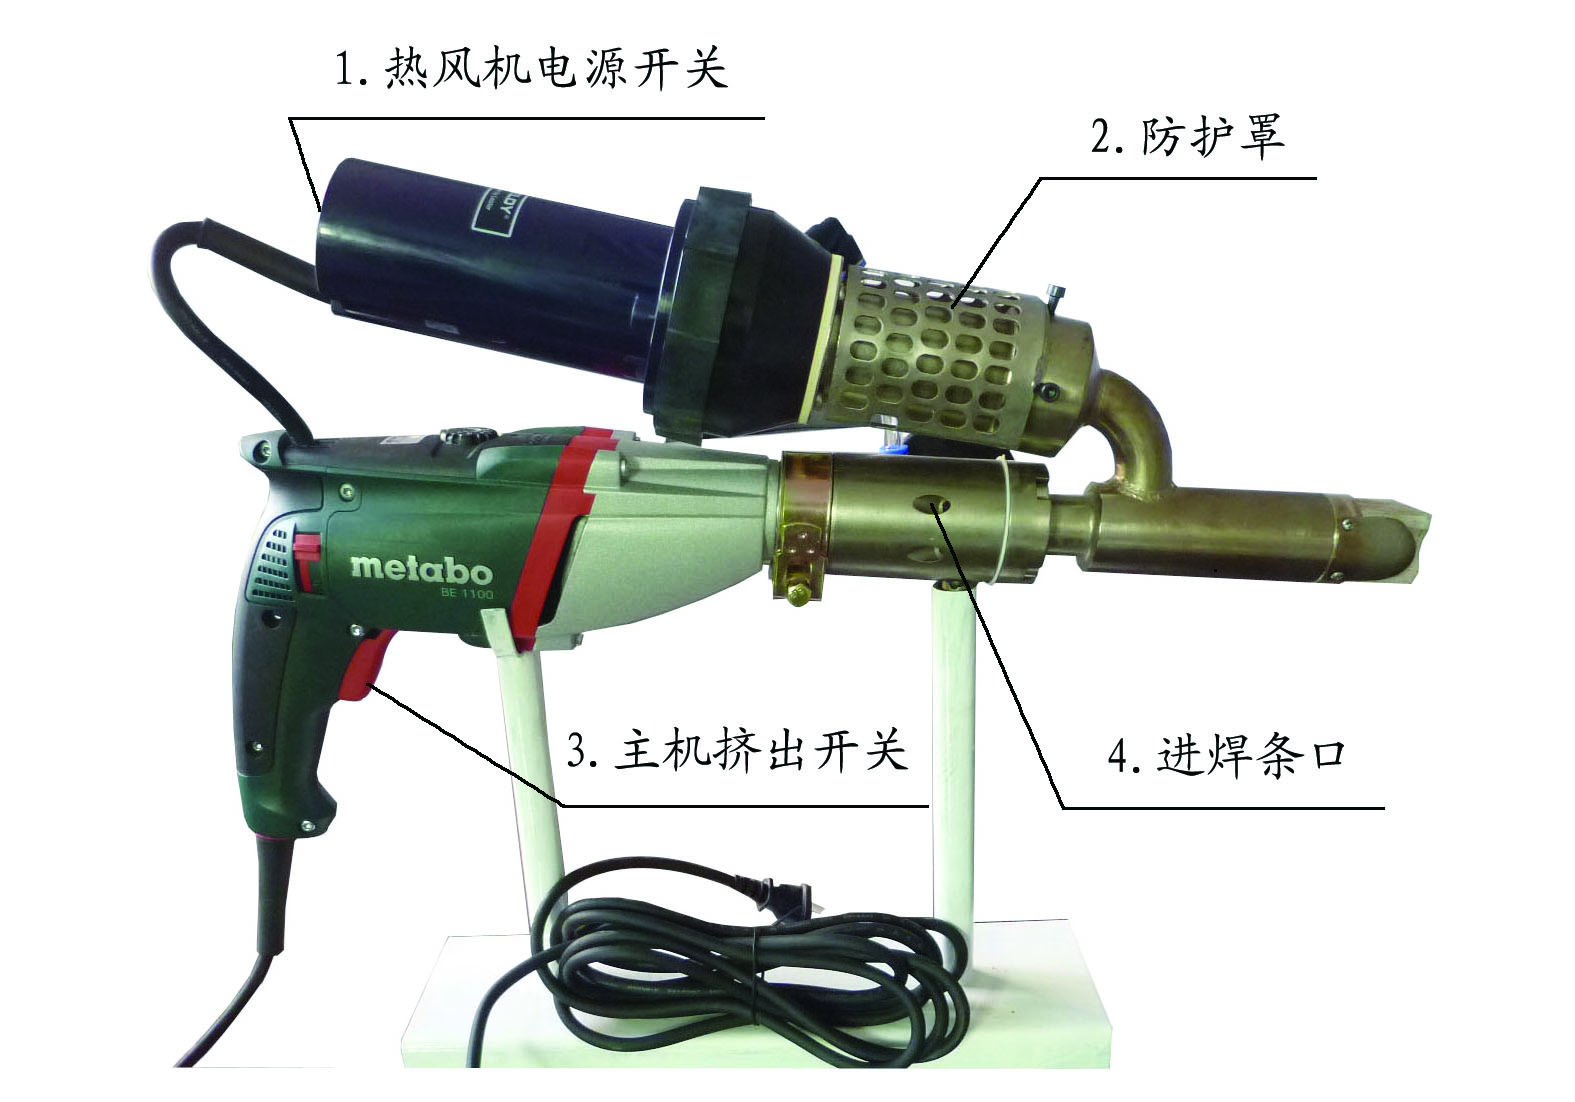 青岛市塑料焊枪厂家用于PE~PP材质各种环境的手提挤出式塑料焊枪